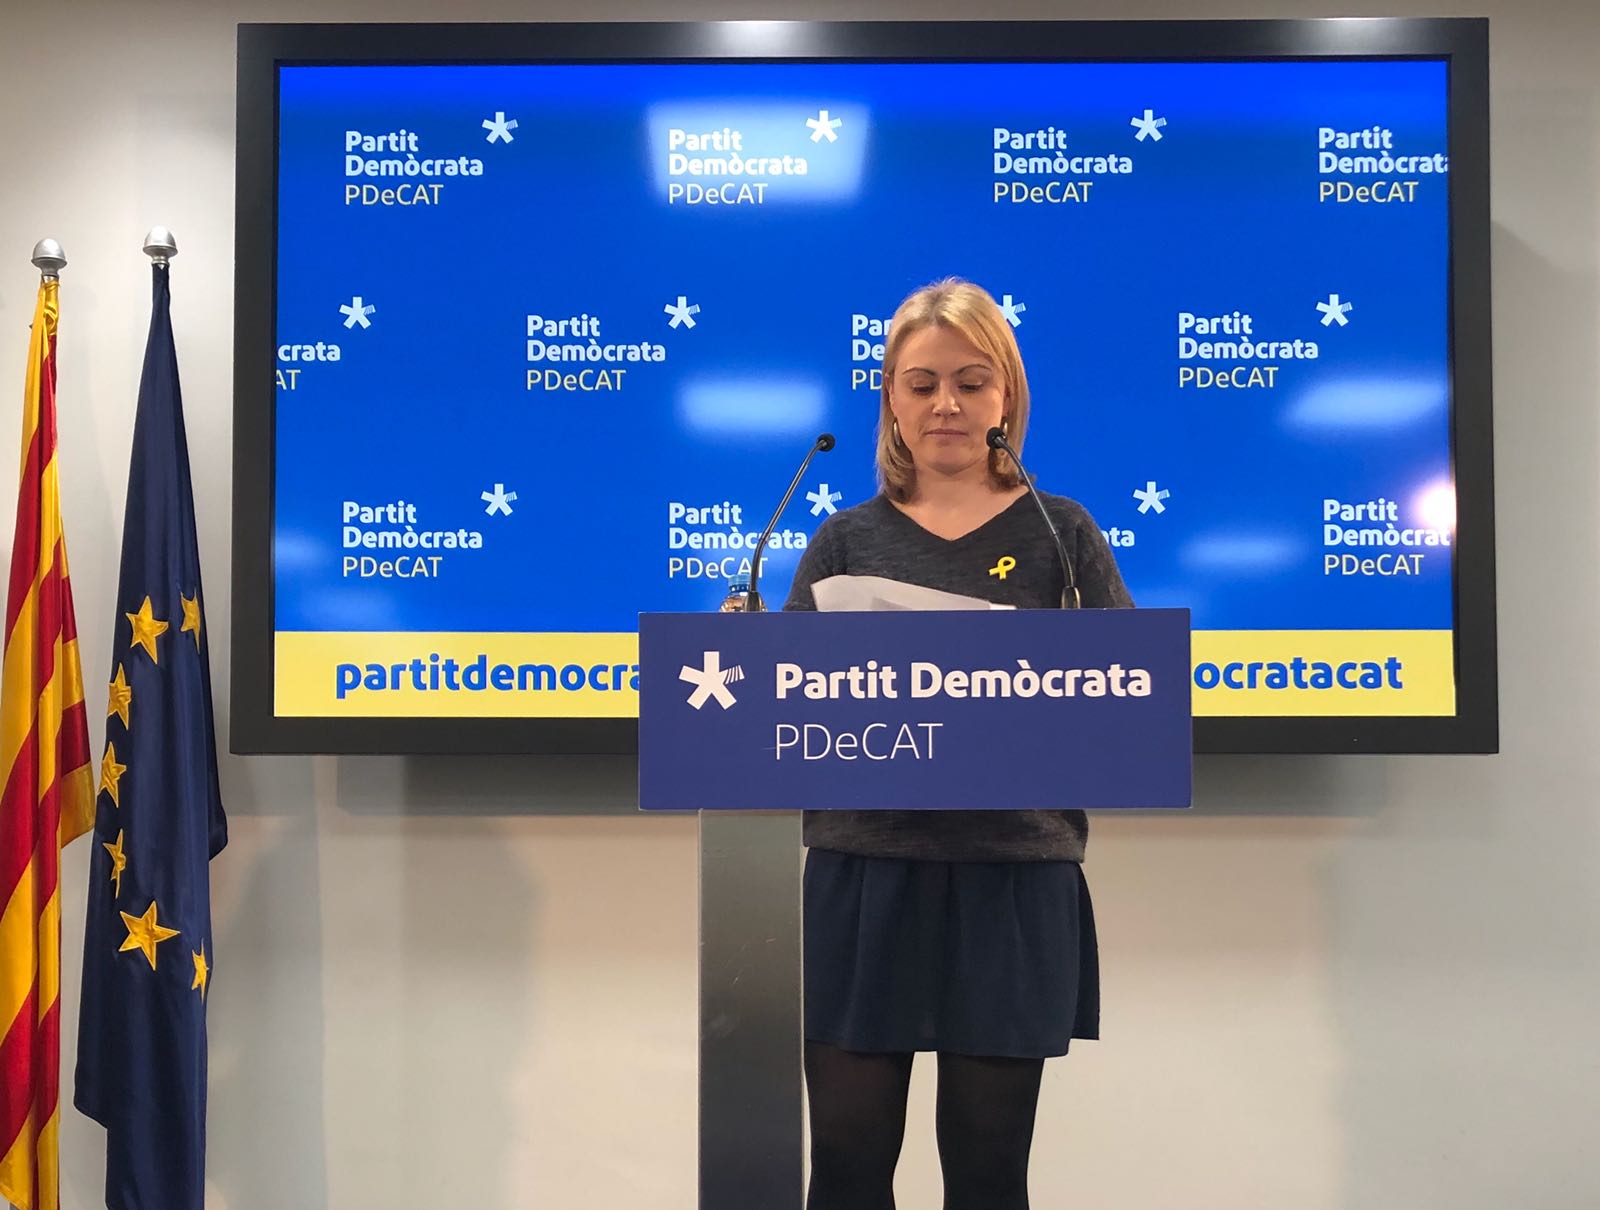 El PDeCAT presiona para formar Govern: "Las elecciones no son nuestro escenario"